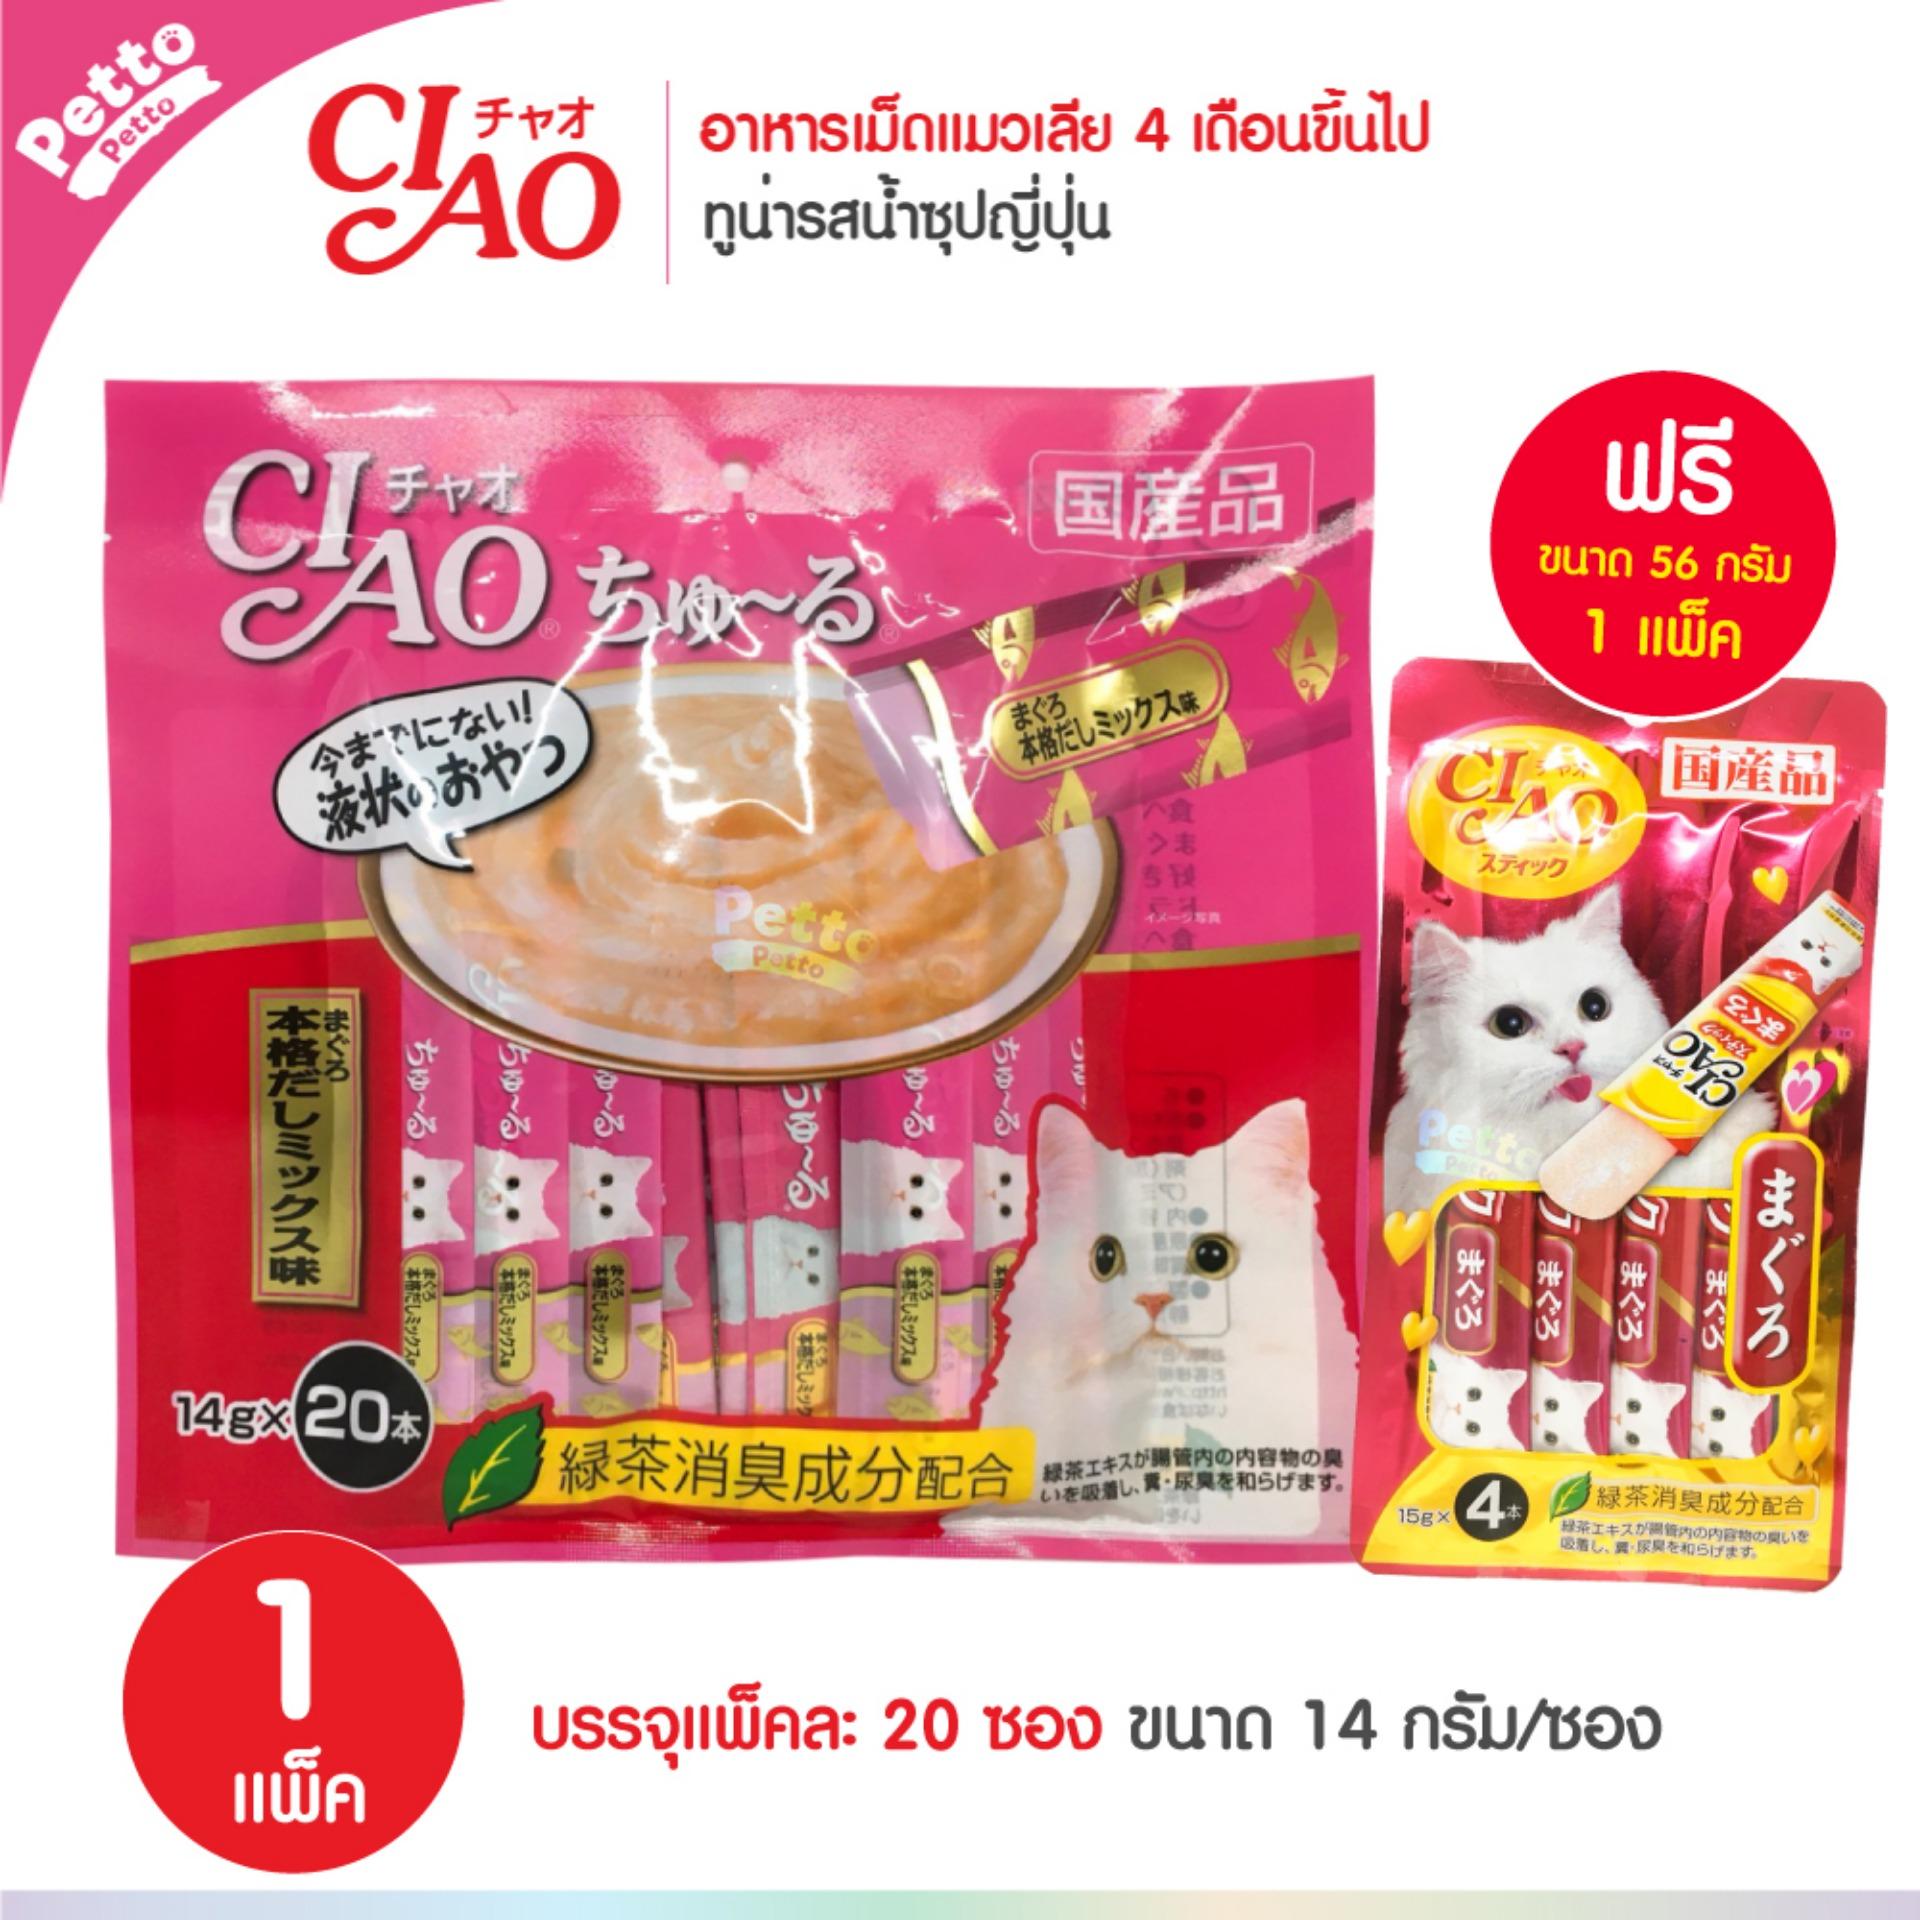 CIAO Churu Tuna Japanese Soup ขนมแมวเลีย ปลาทูน่า รสน้ำซุปญีปุ่น (14g x 20 ซอง) ฟรี! ขนมแมวเลีย 4 ซอง - 1 Unit